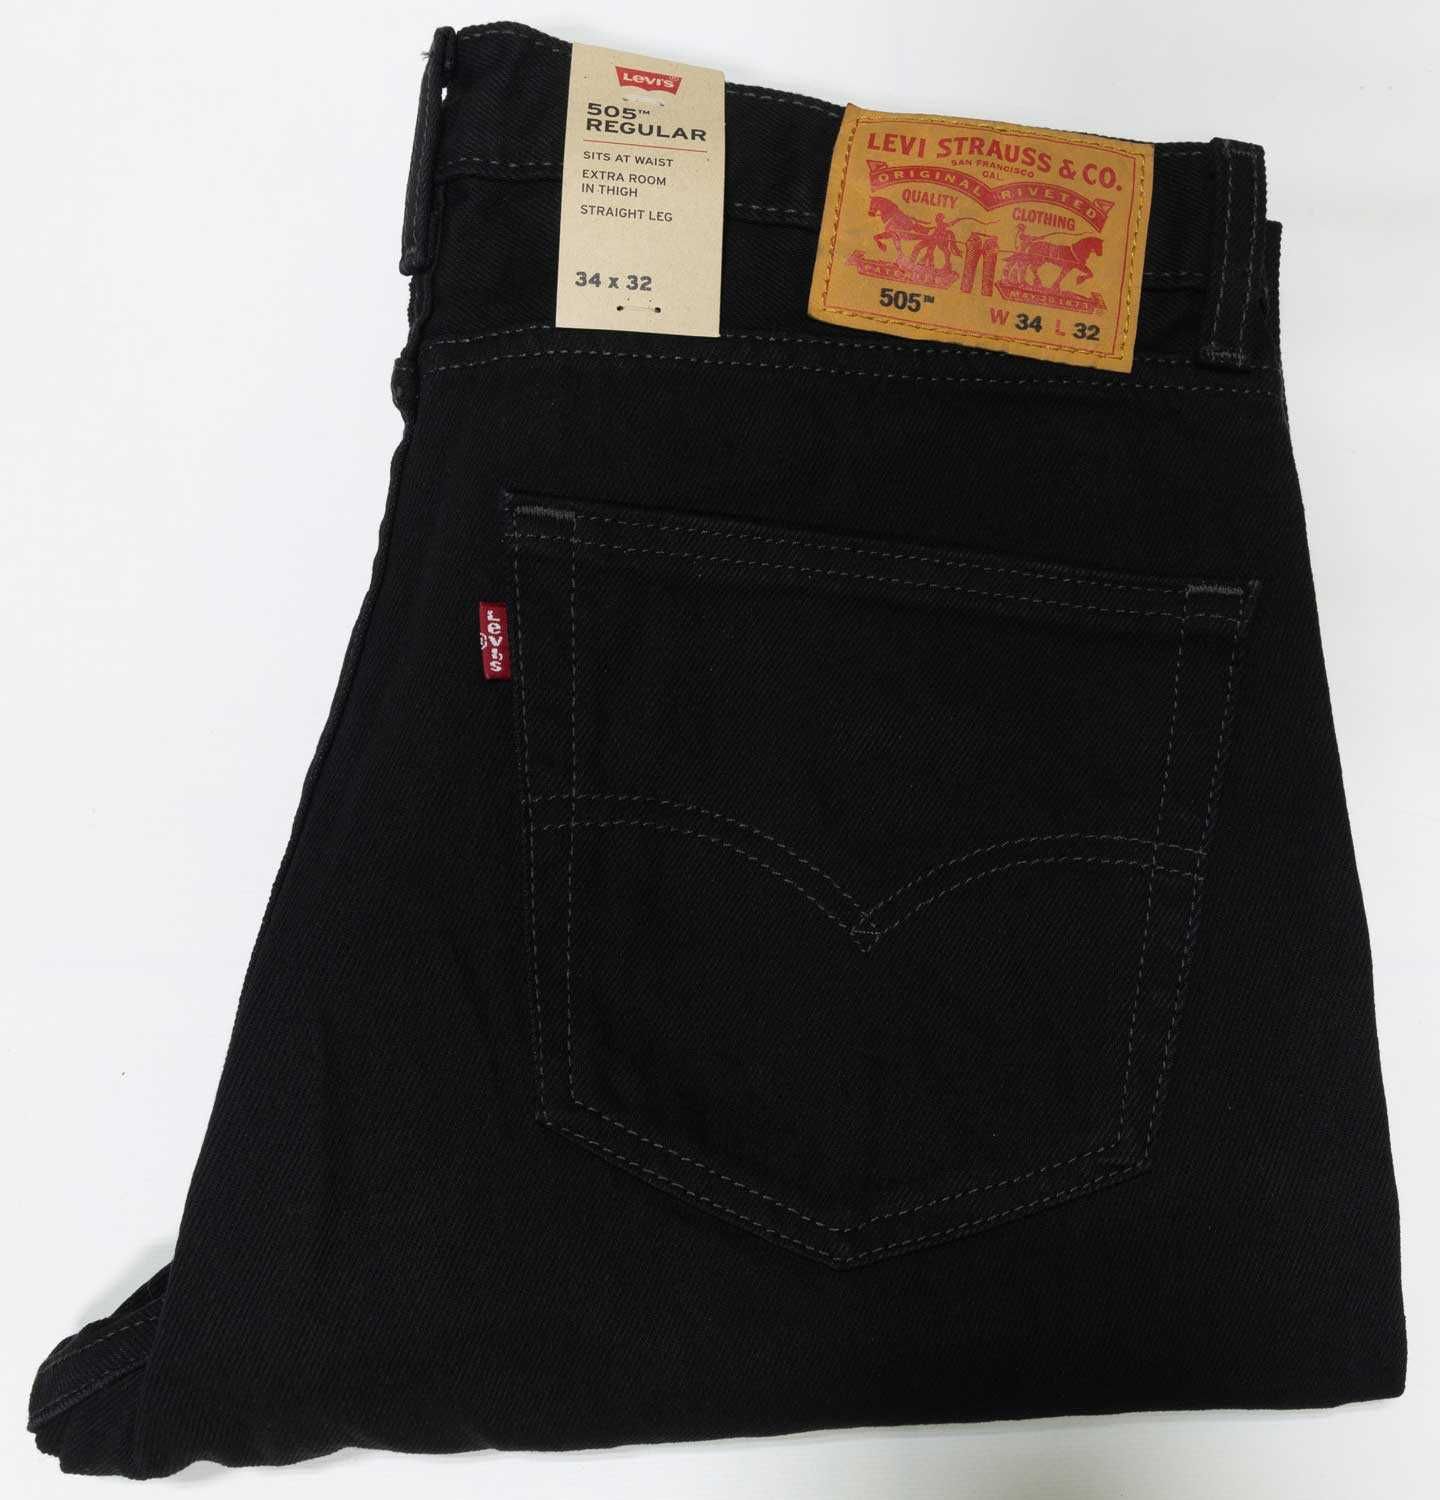 Мужские джинсы Levis 505 Black черные, 005050260 Левис, Ливайс США